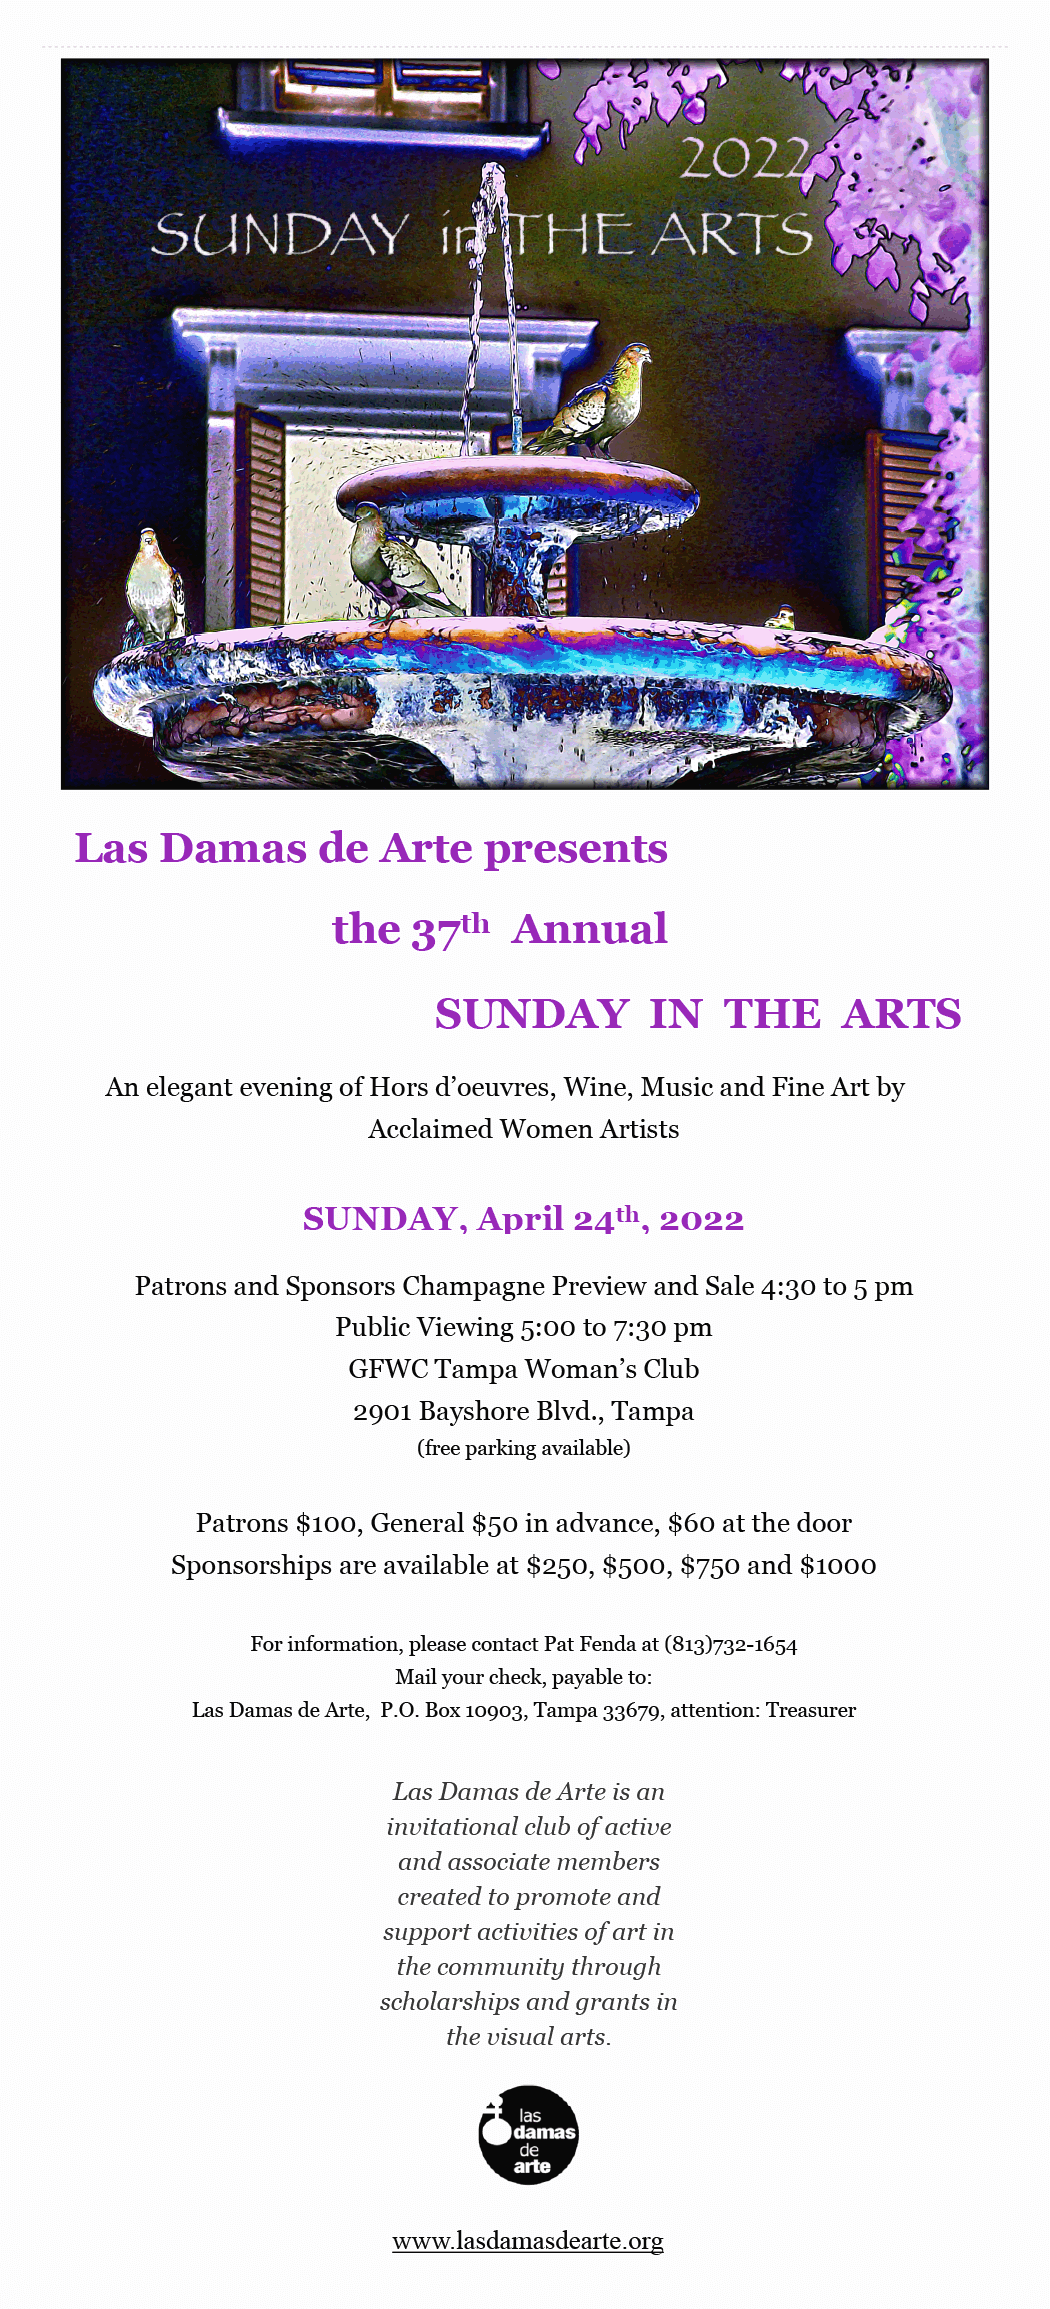 Las Damas de Arte presents the 37th Annual SUNDAY IN THE ARTS